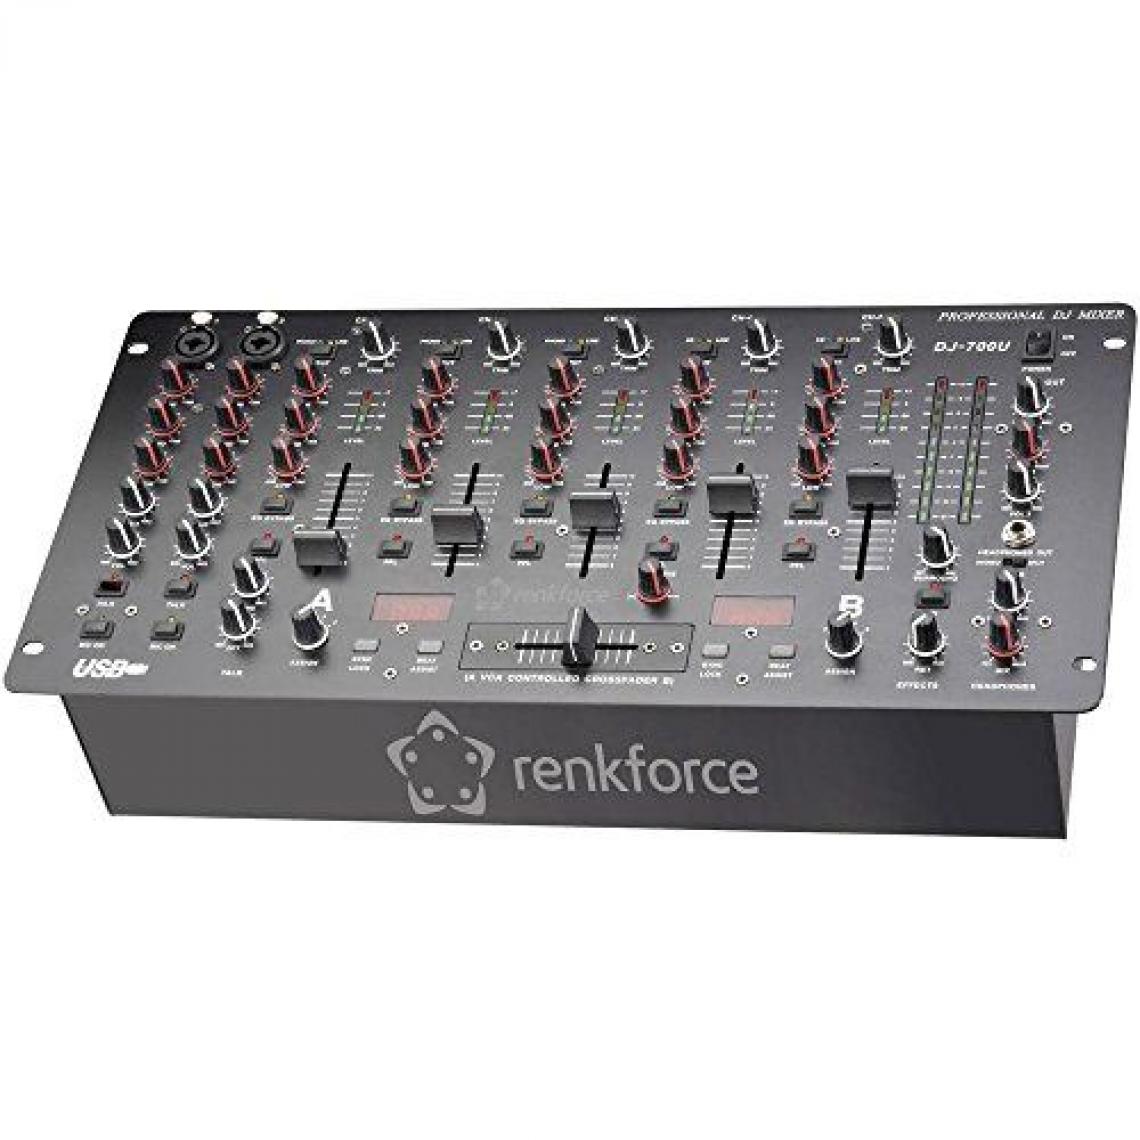 Inconnu - Table de mixage DJ 19 pouces Renkforce DJM700U USB - Tables de mixage